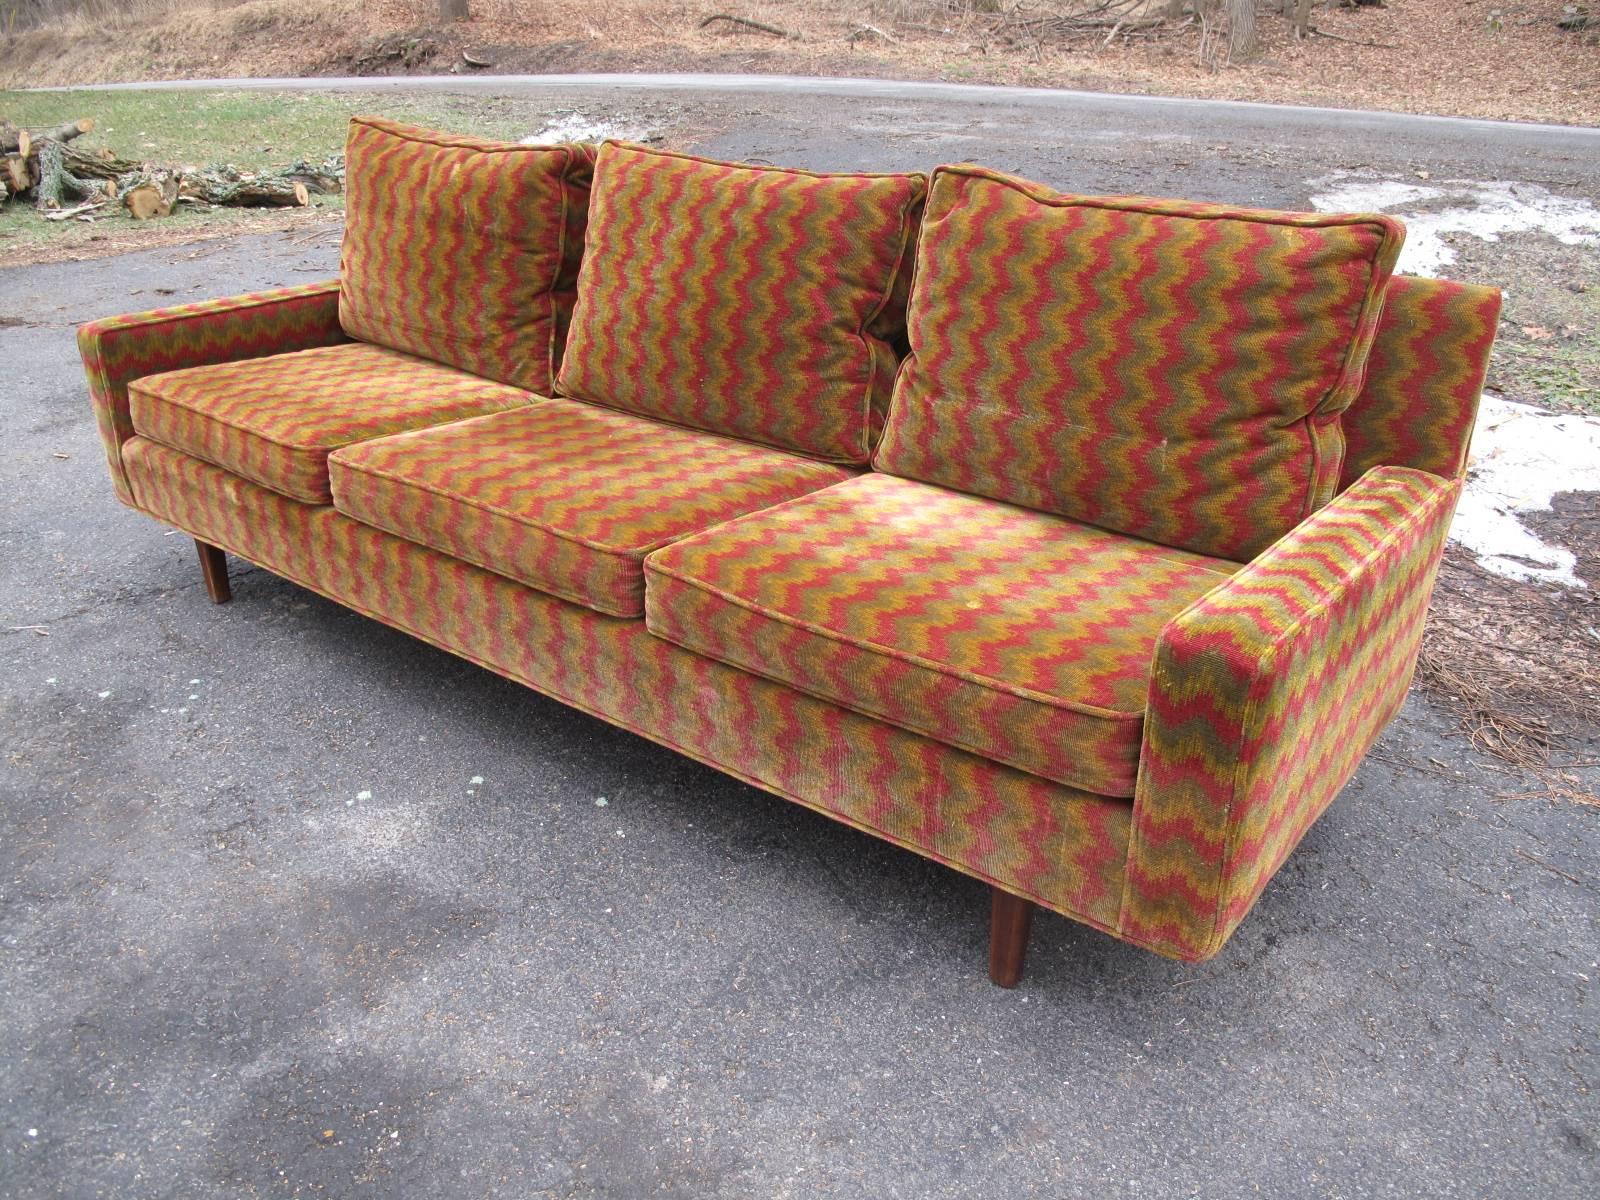 American Mid-Century Modern sofa in original patterned velvet upholstery. Manner of Dunbar.